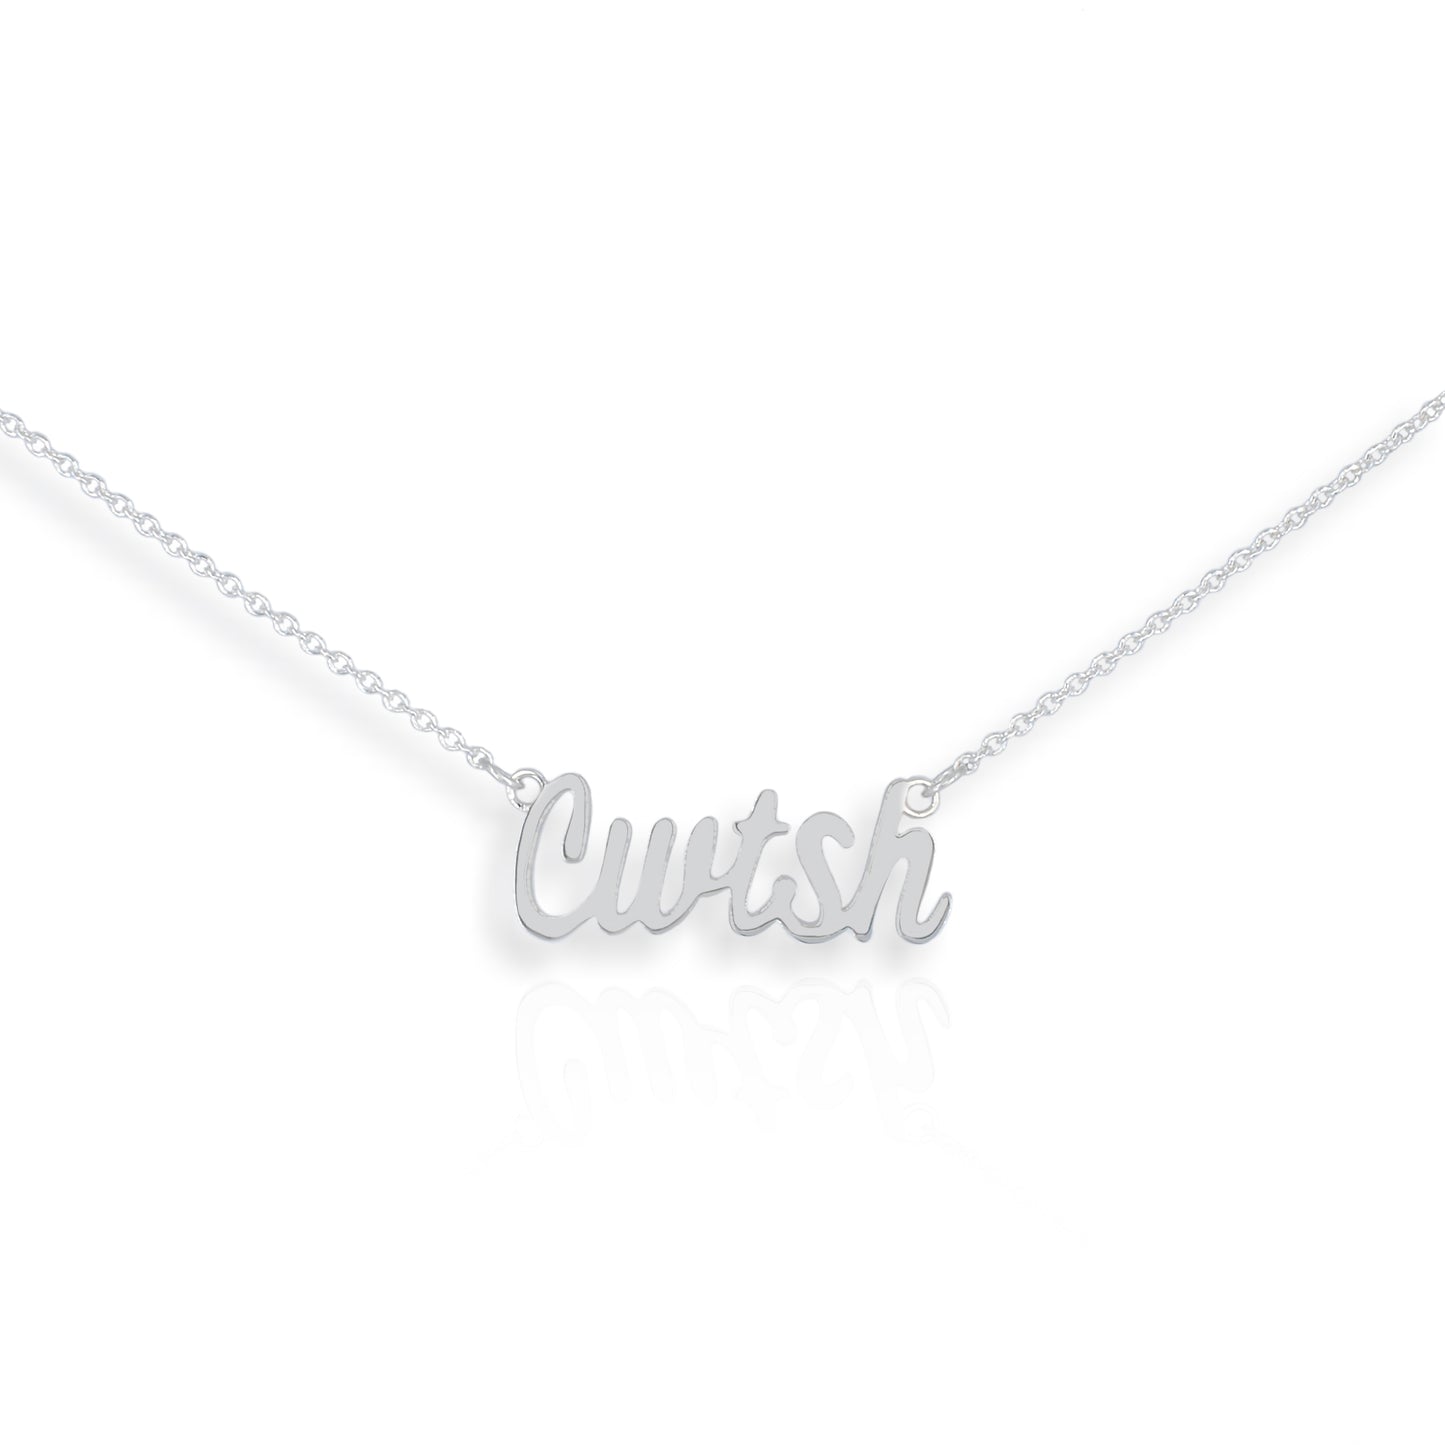 Signature Cwtsh Silver Pendant